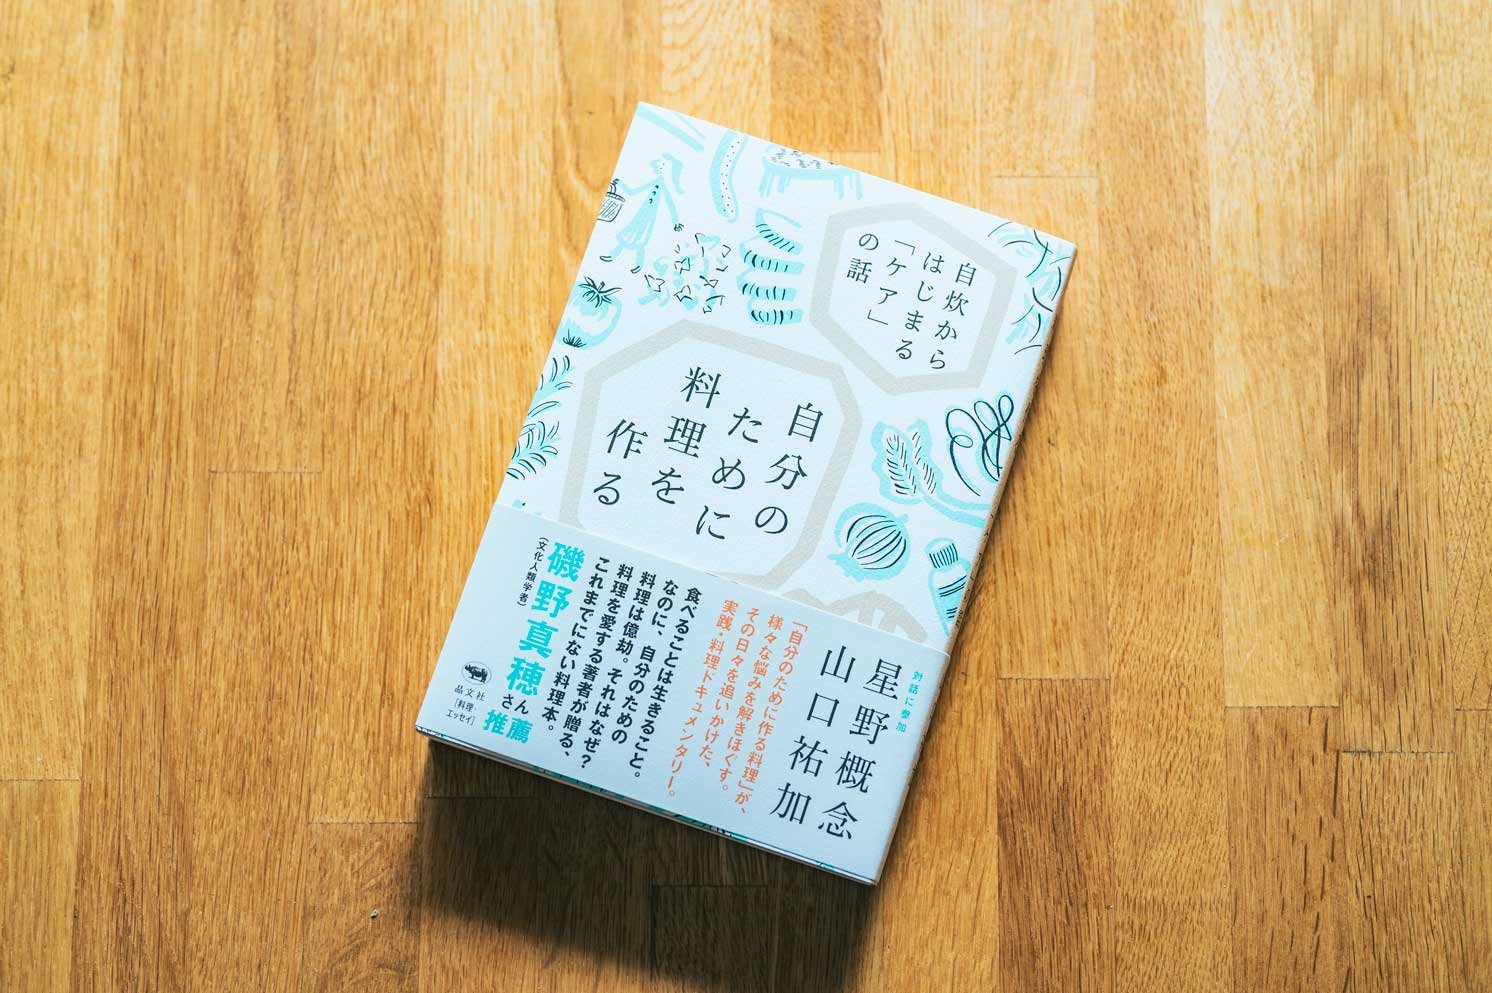 山口さんの著作『自分のために料理を作る――自炊からはじまる「ケア」の話』 | Make New Magazine「未来の定番」をつくるために、パナソニックのリアルな姿を伝えるメディア